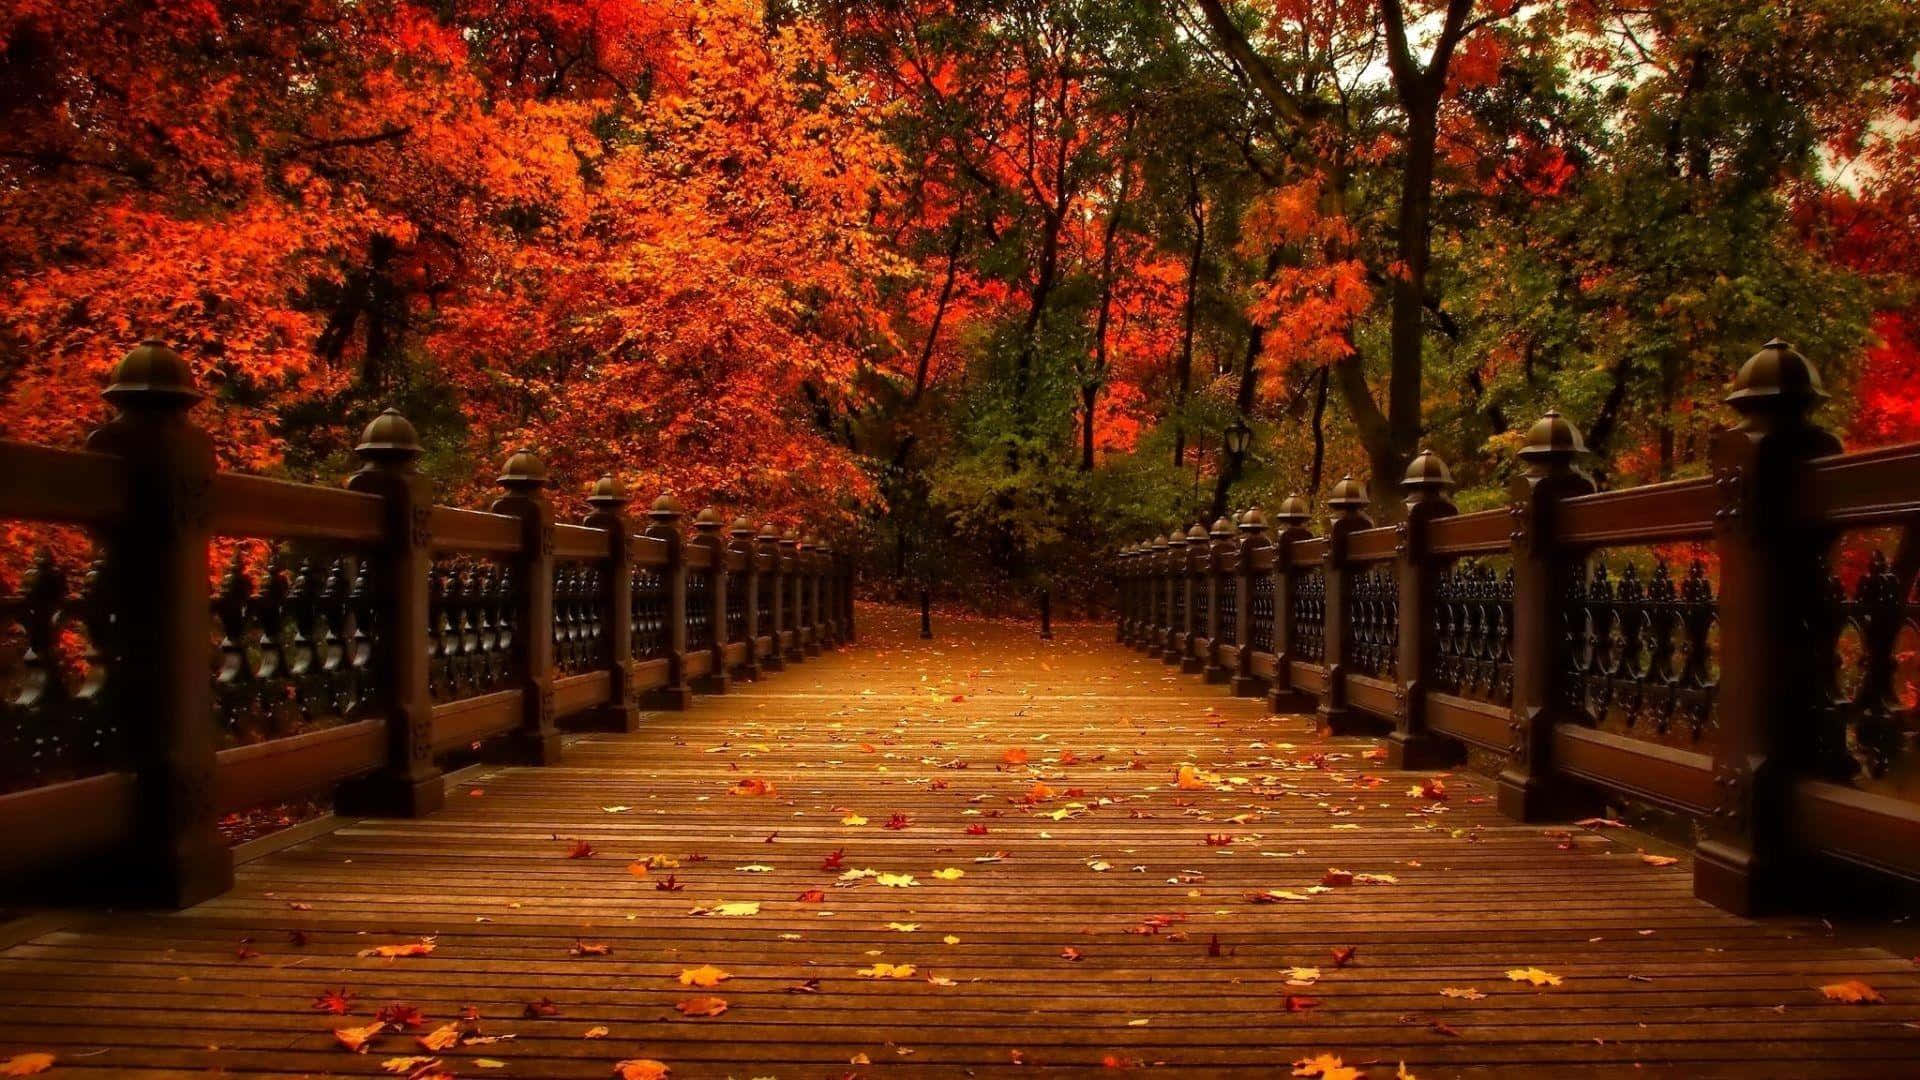 Einehölzerne Brücke Mit Roten Blättern Im Hintergrund Wallpaper